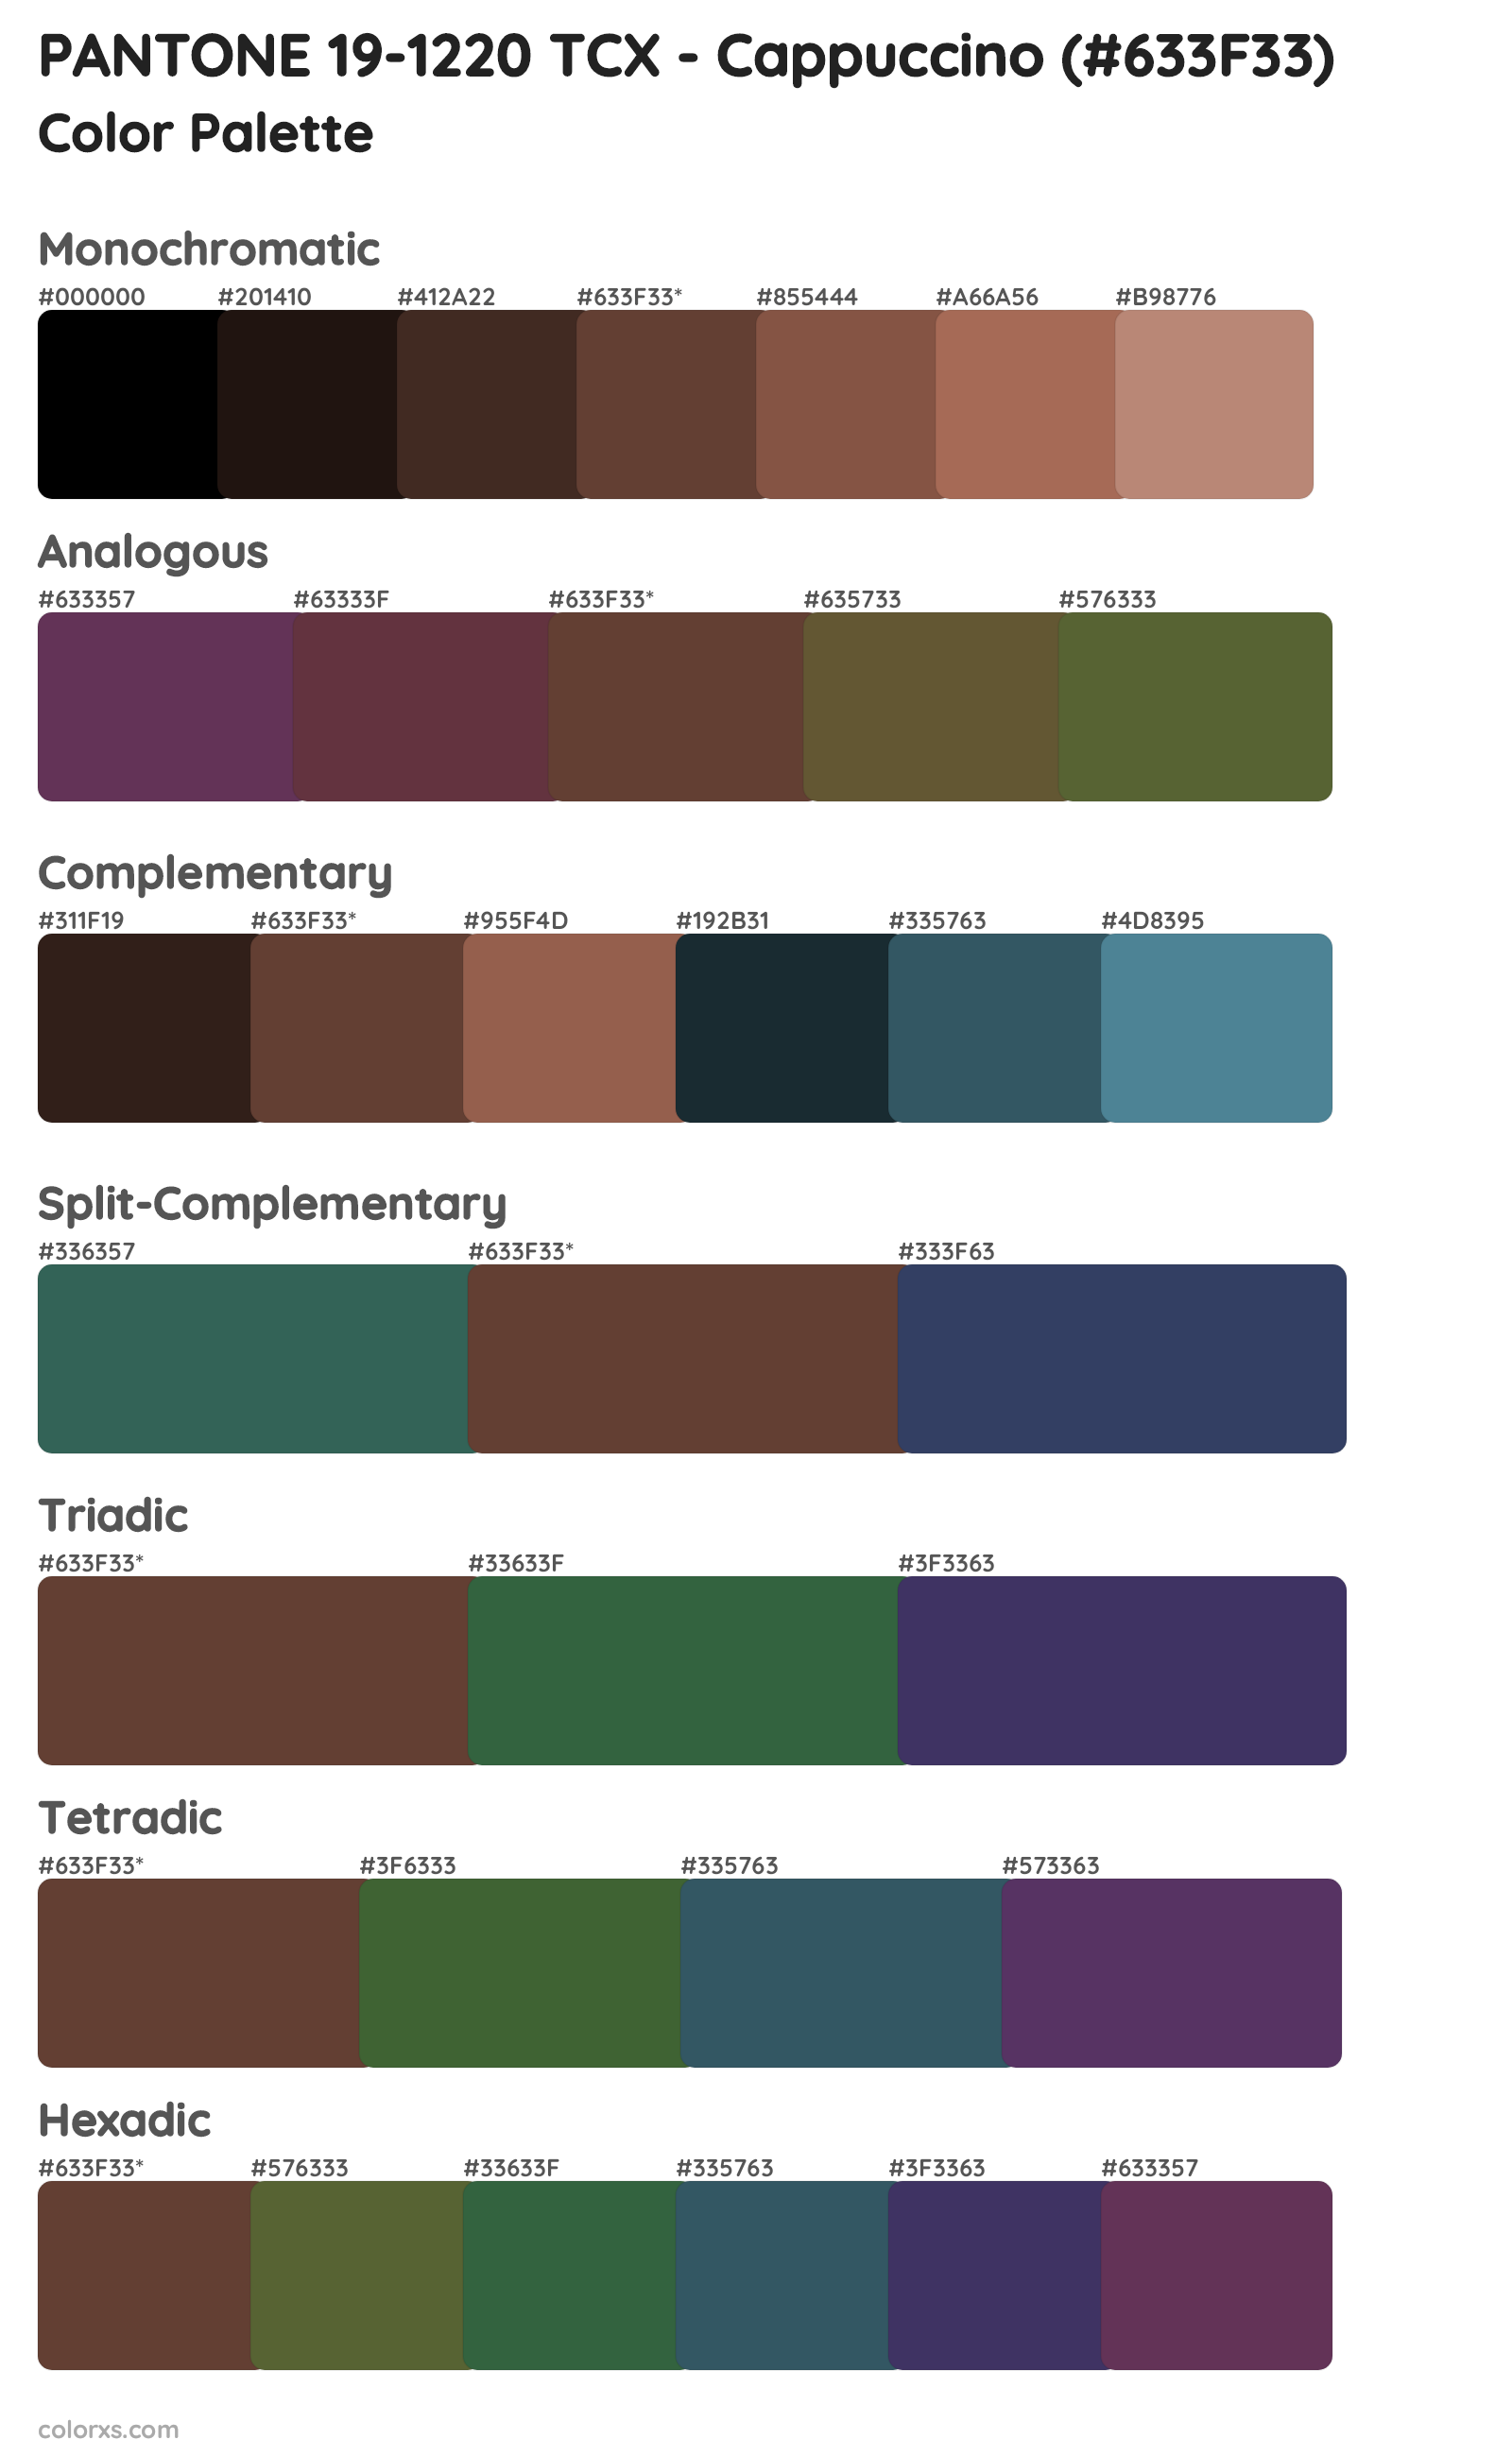 PANTONE 19-1220 TCX - Cappuccino Color Scheme Palettes